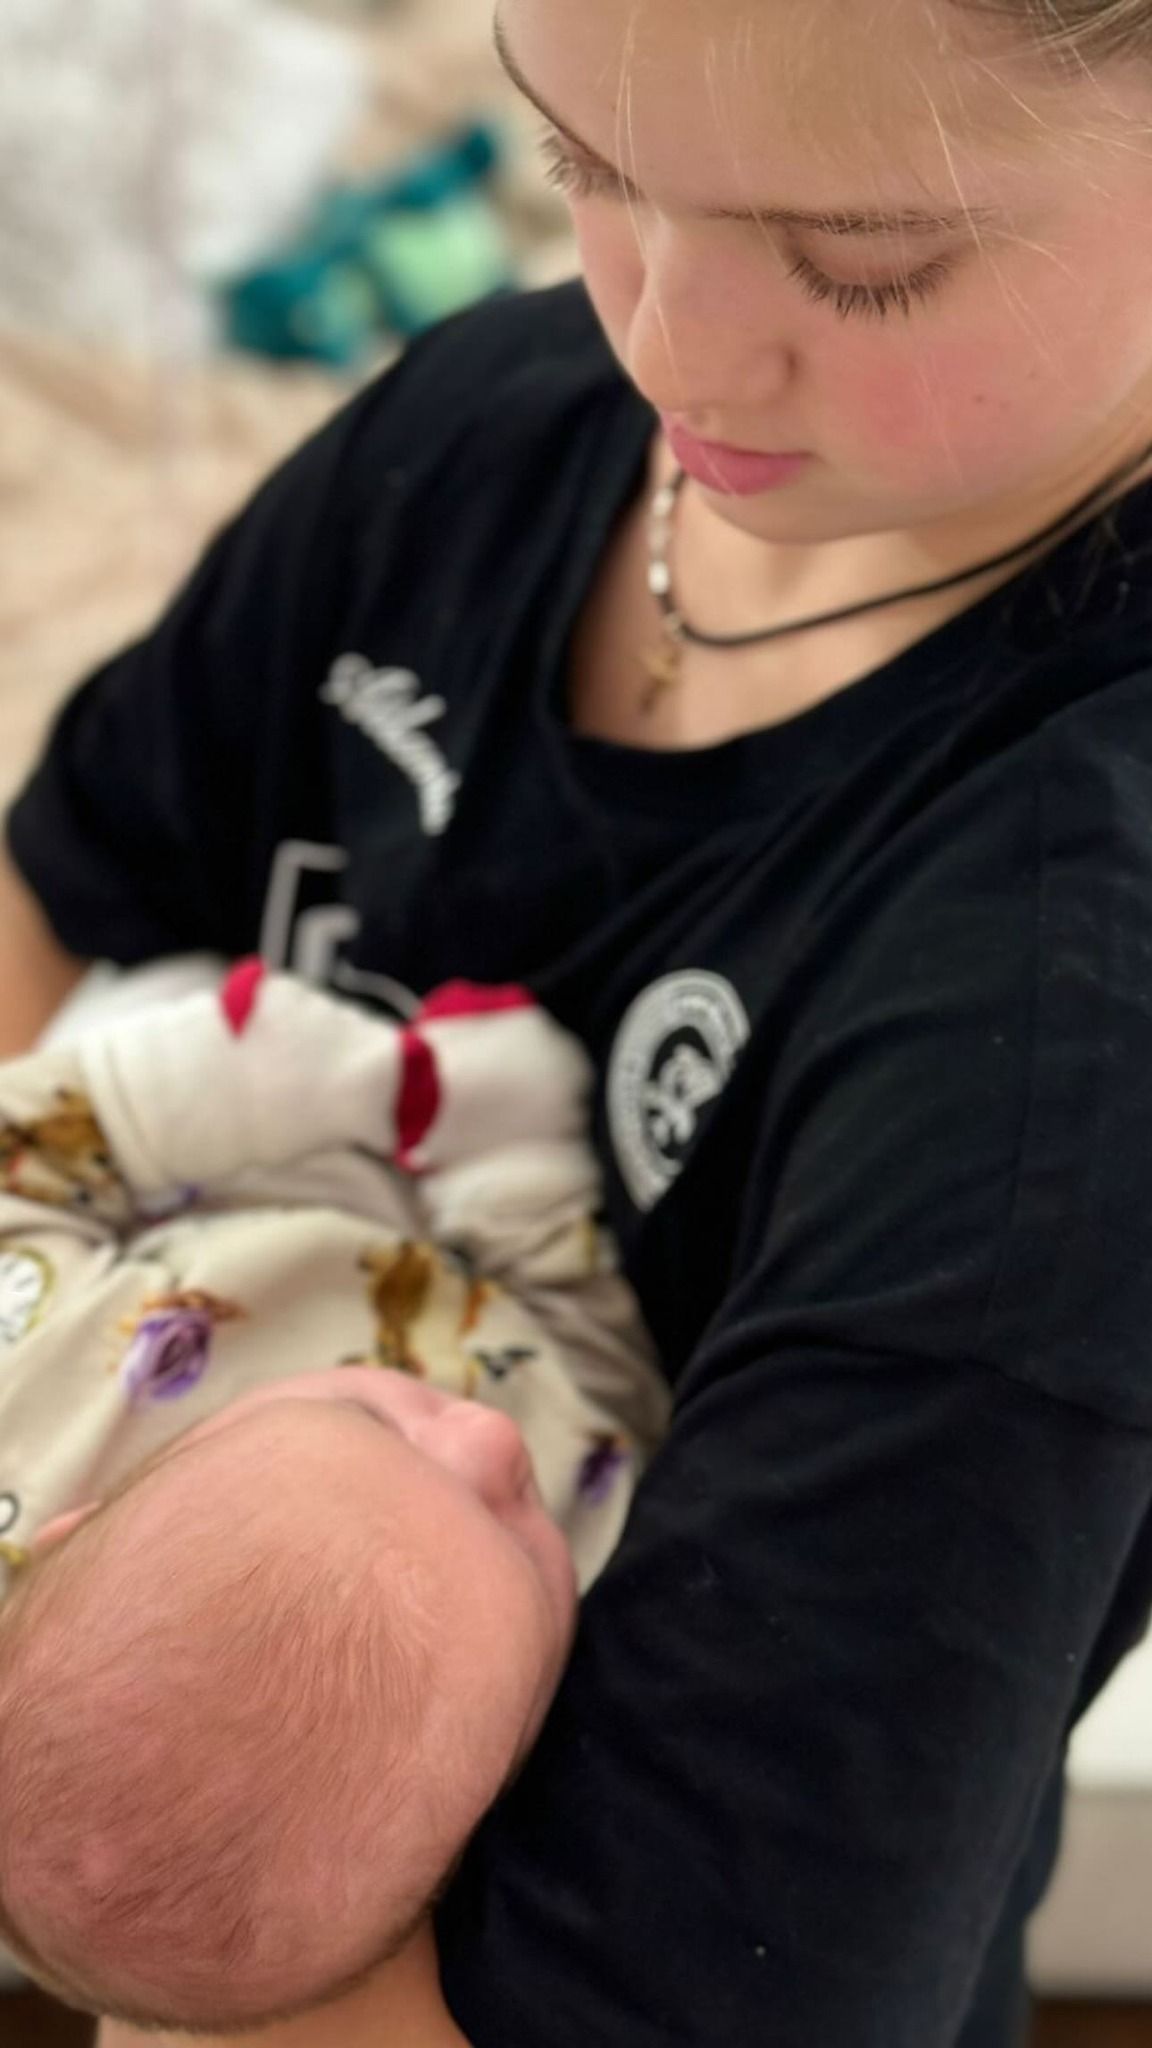 Олександр Усик вперше показав фото своєї новонародженої доньки, яке викликає зворушення.